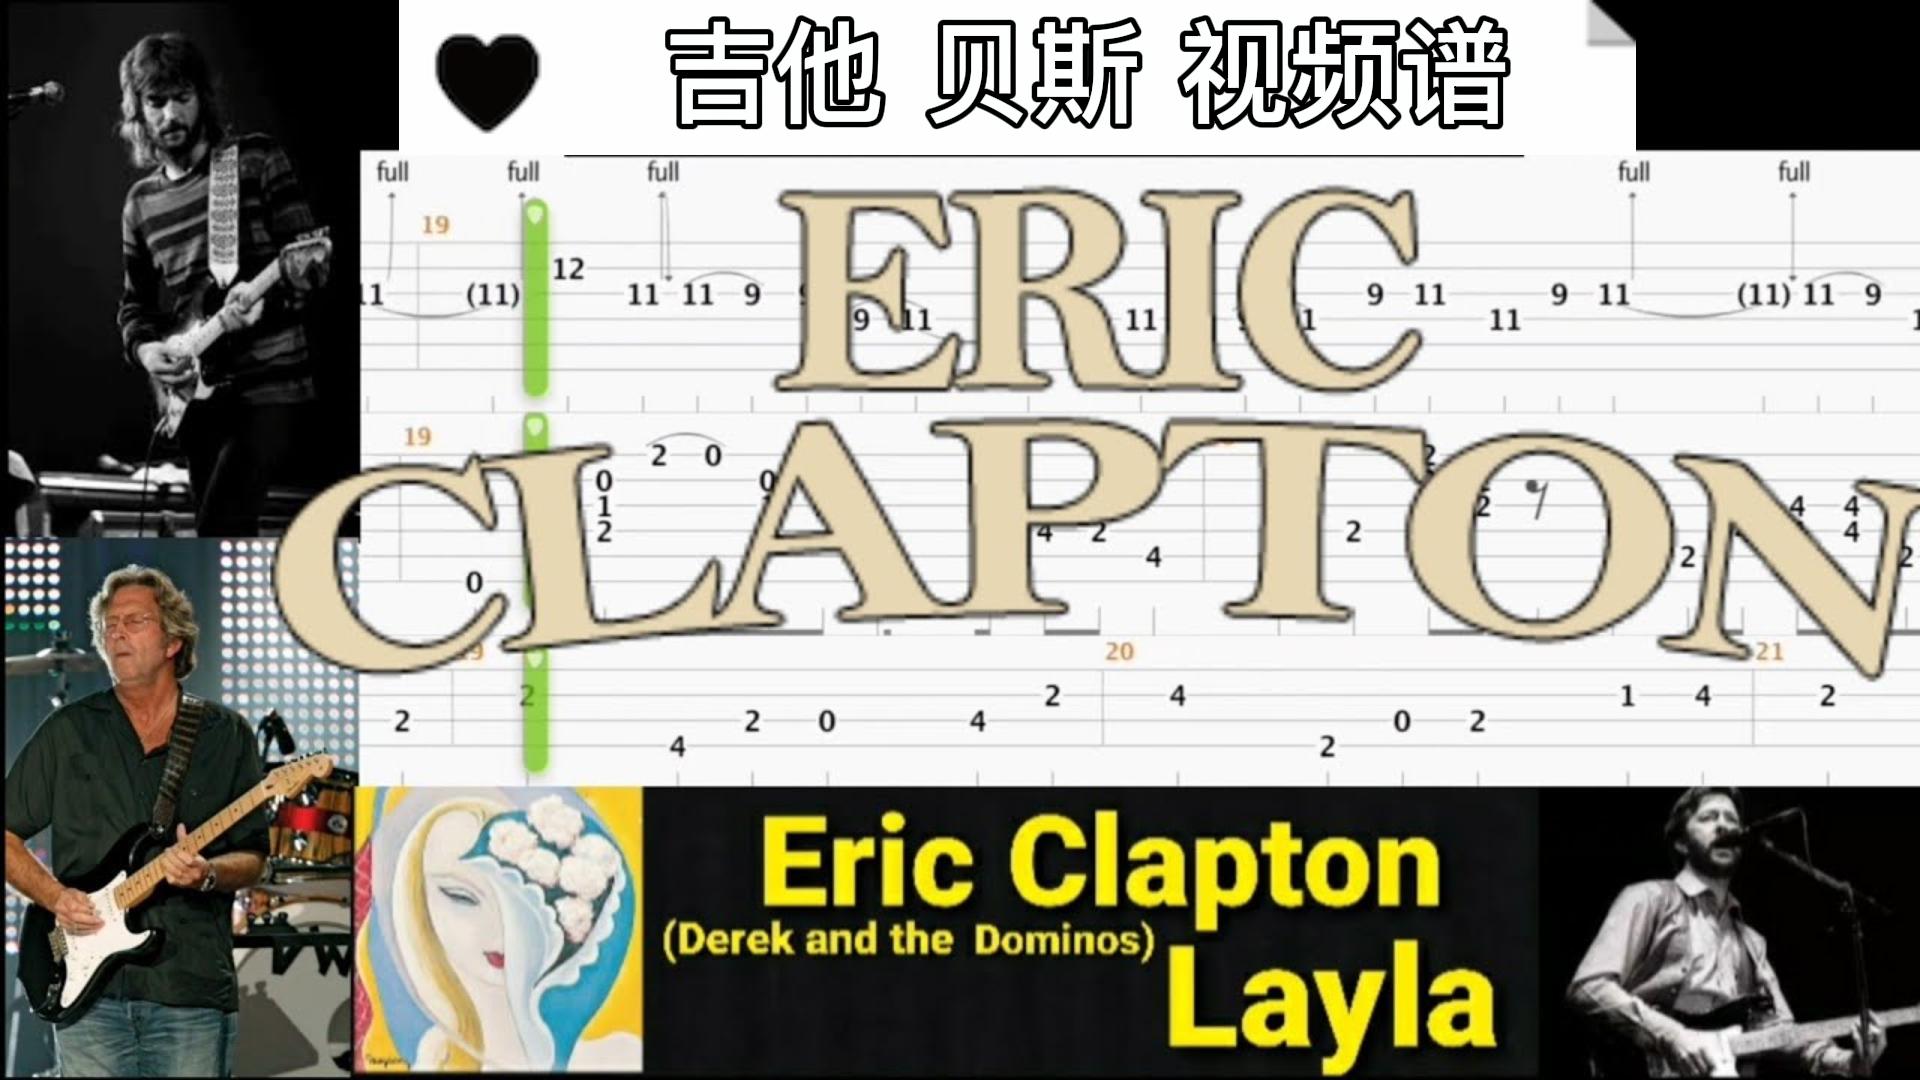 埃里克·克莱普顿 经典歌曲 《Layla 》吉他贝斯视频谱-古桐博客